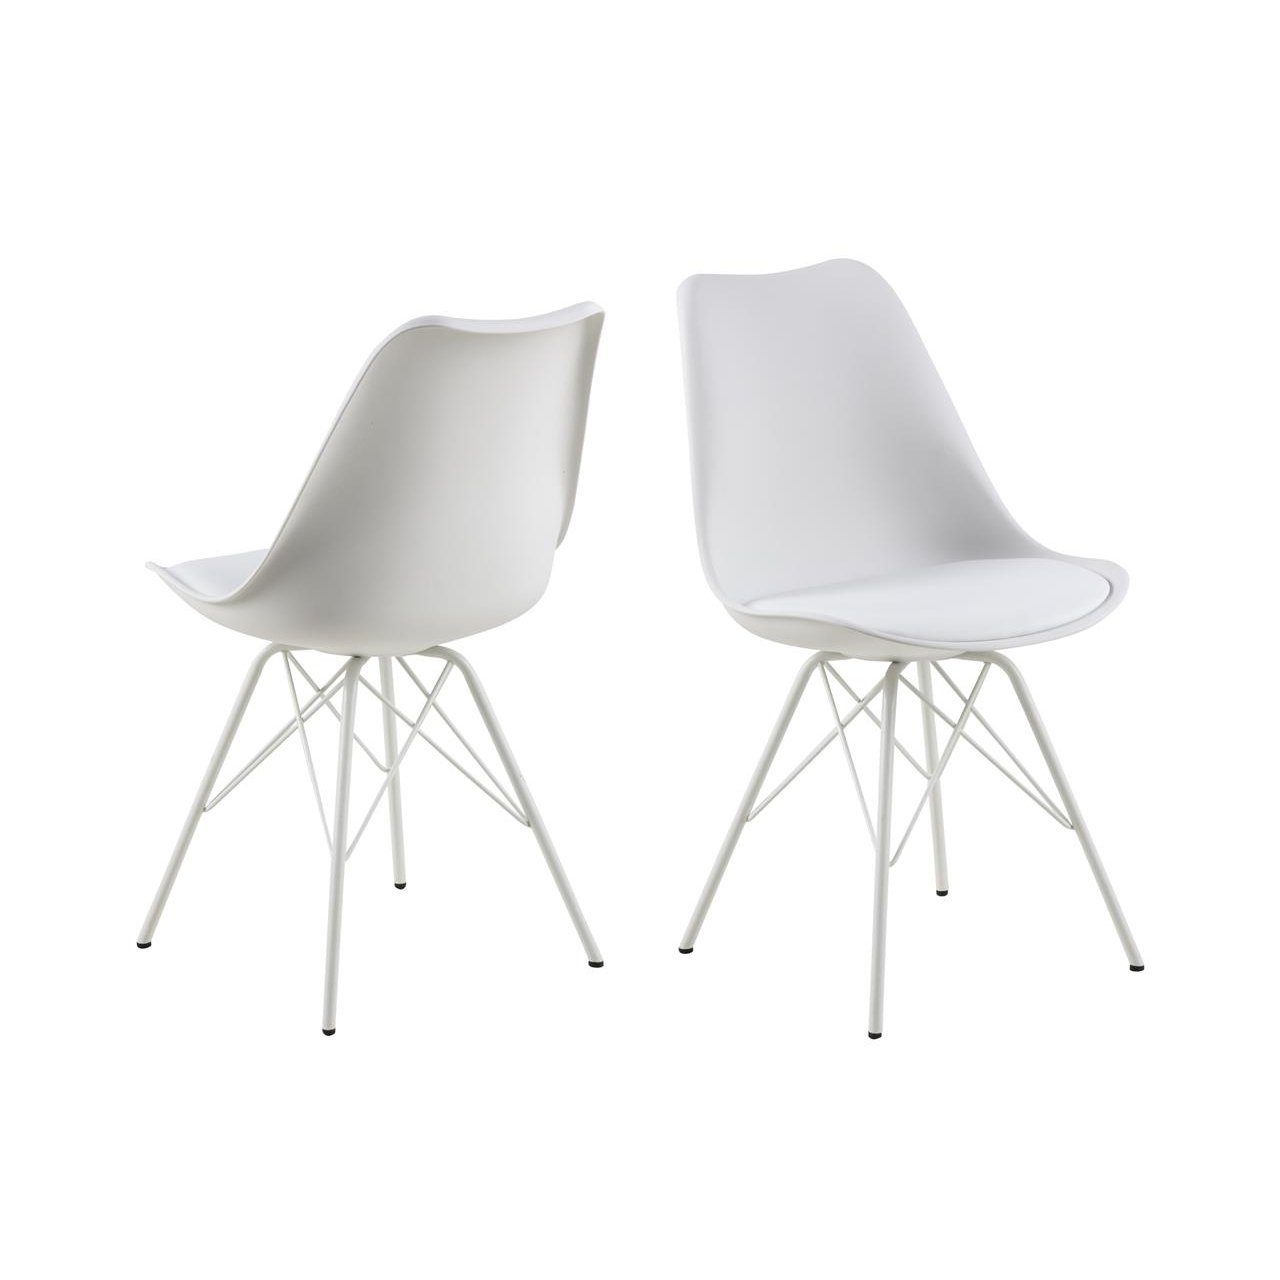 Trendstore „Ariane“ Stuhl mit Bezug aus Kunstleder in Weiß und Metallgestell.